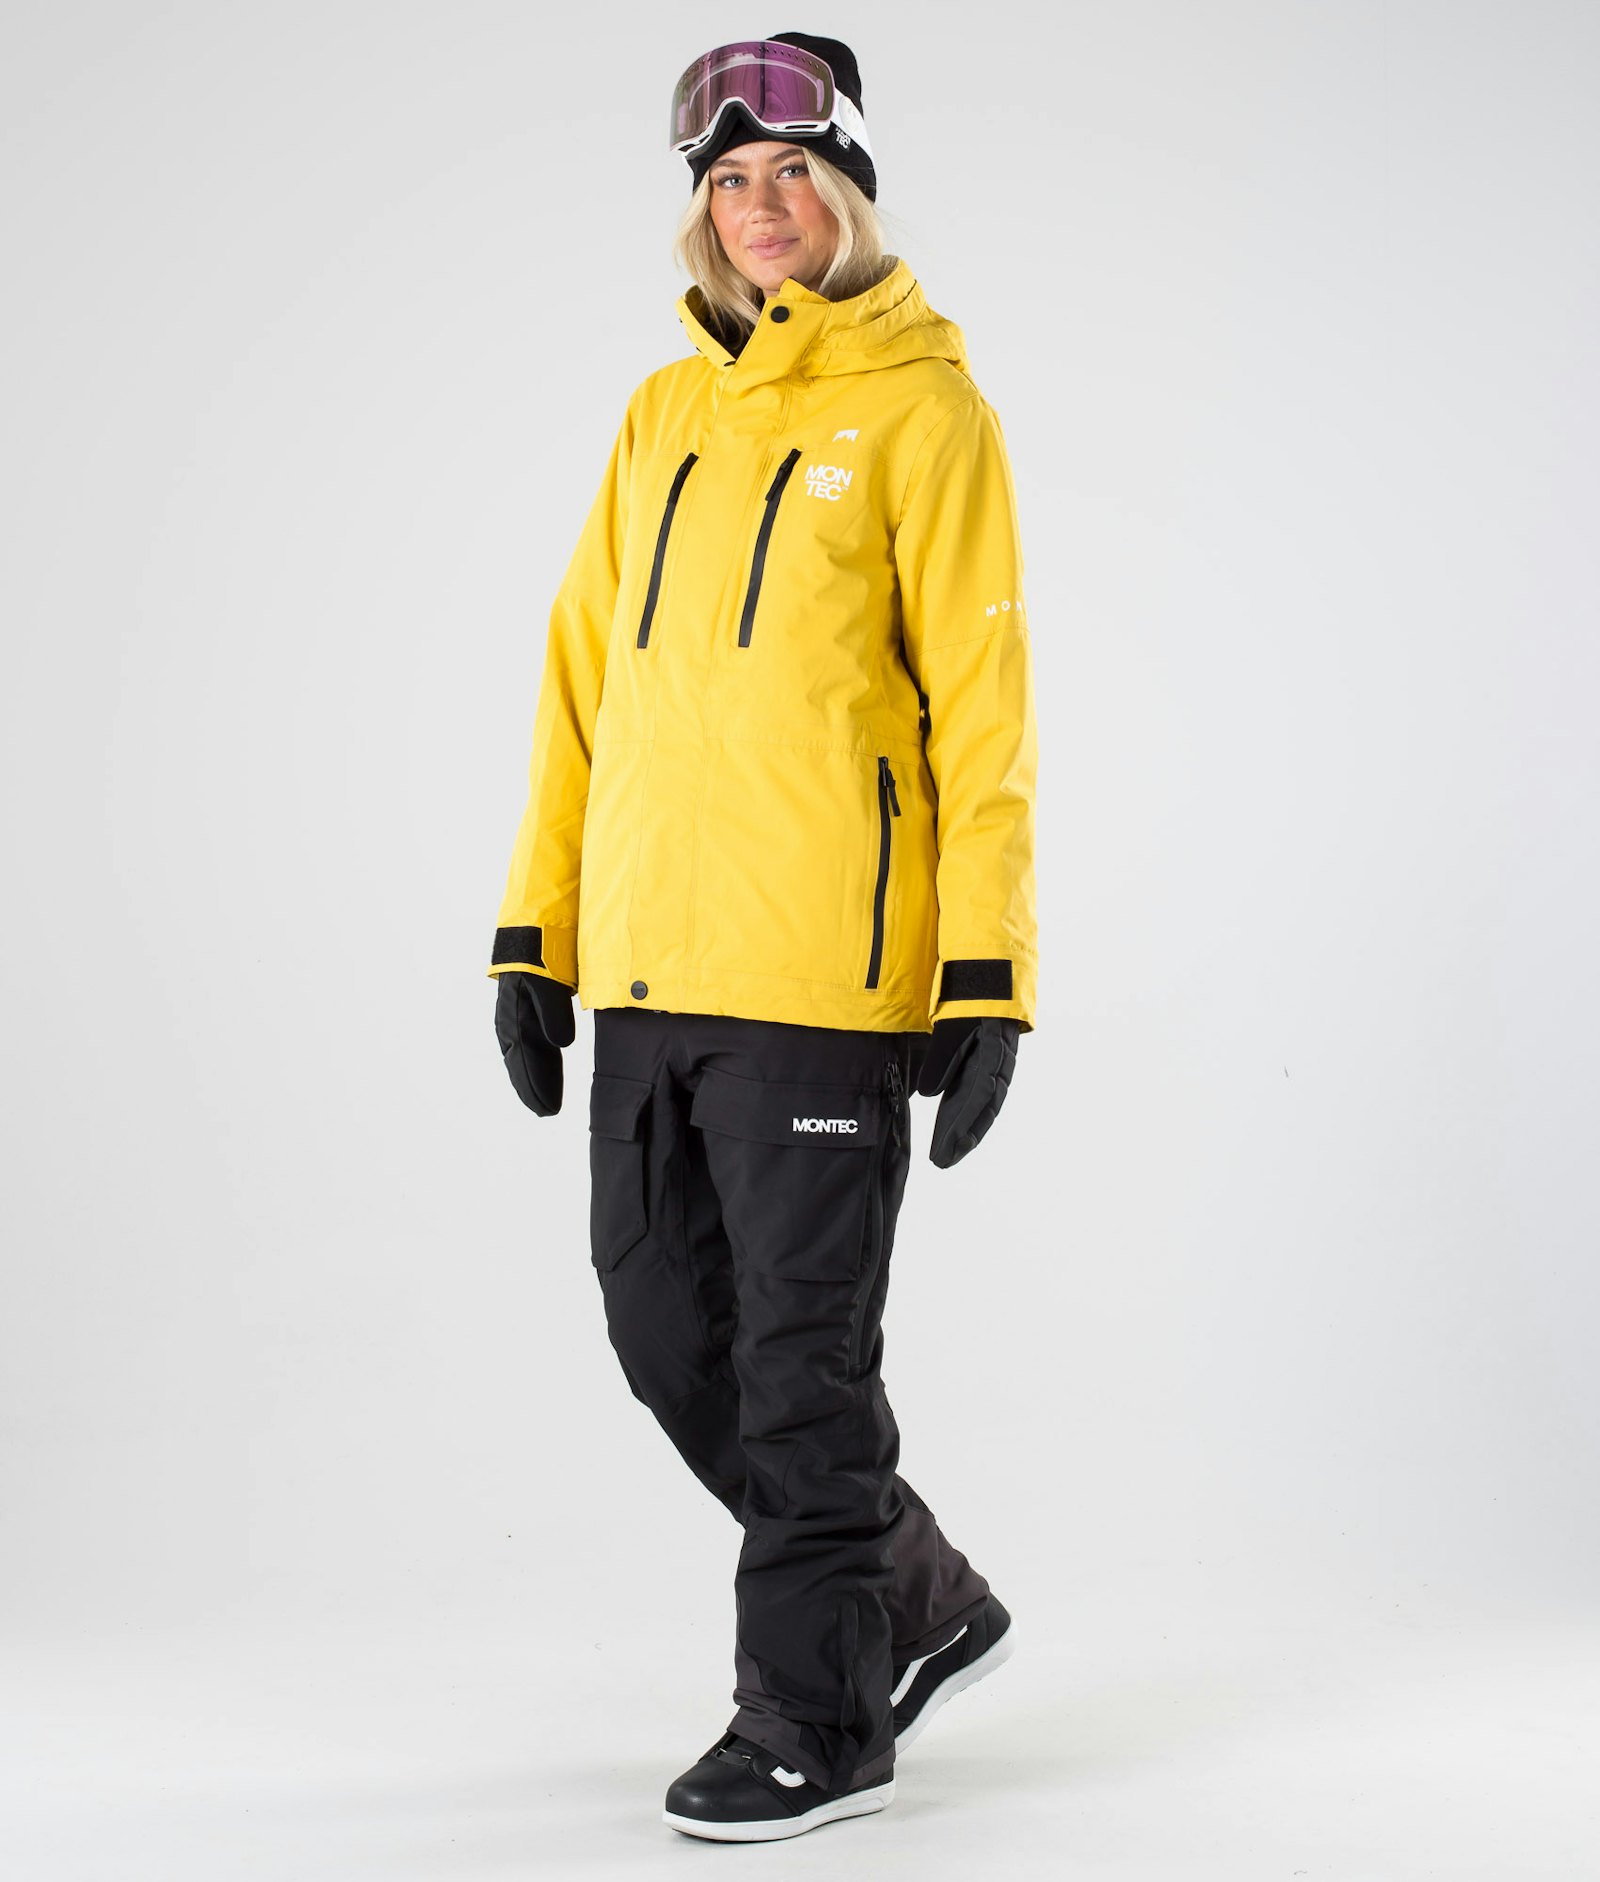 Fawk W 2019 Snowboardjakke Dame Yellow